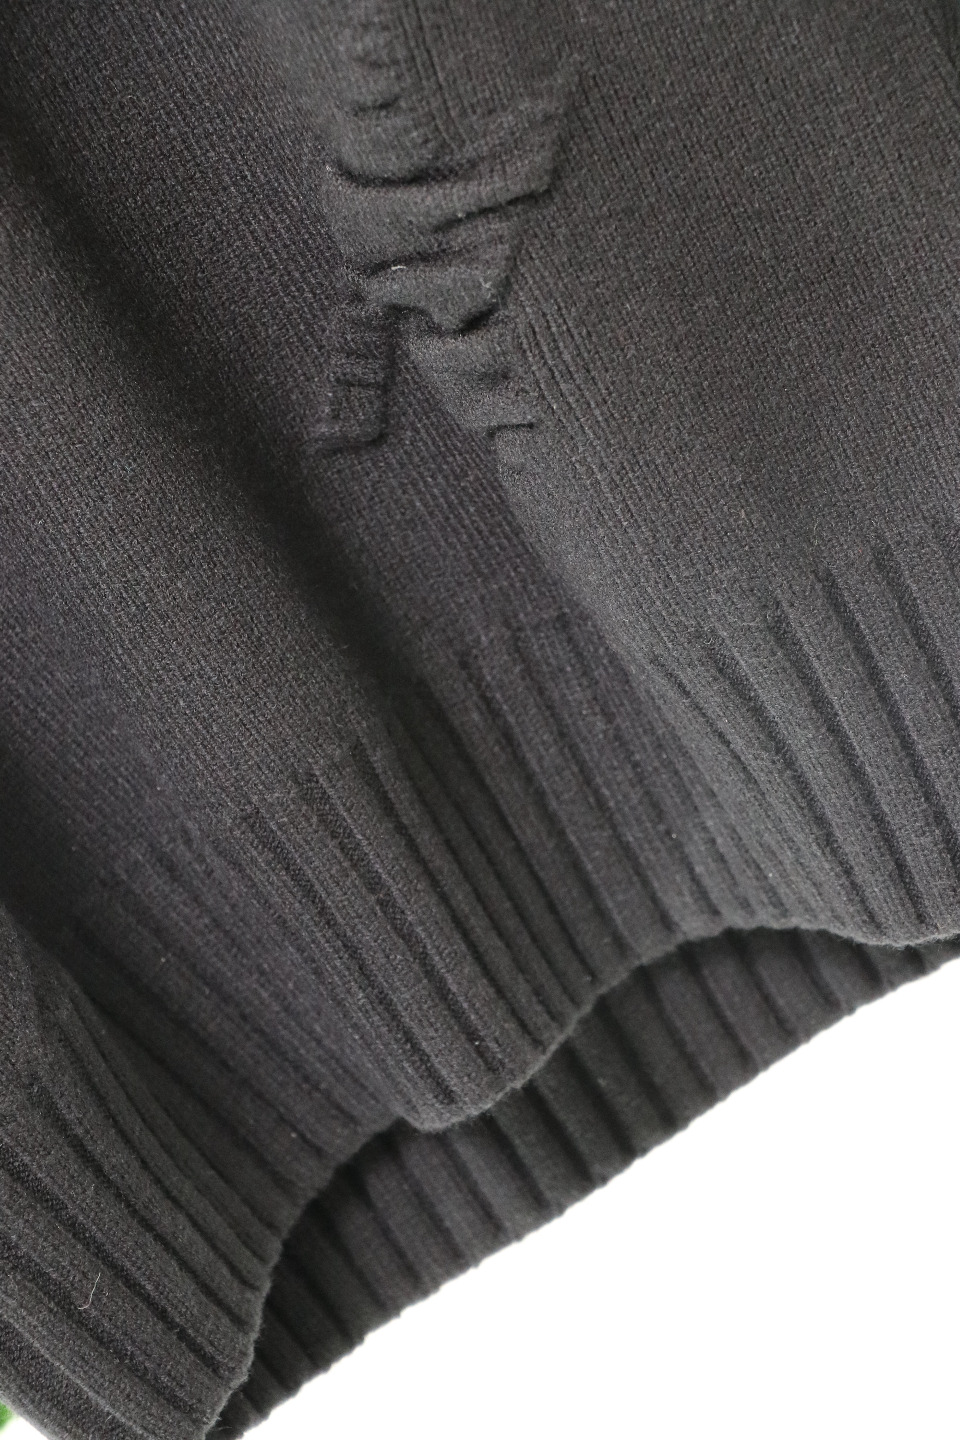 ジバンシィπｎ級品 GIVENCHY 新作シャツ 長袖セーター 柔らかくて暖かい トップス 快適 ブラック_6